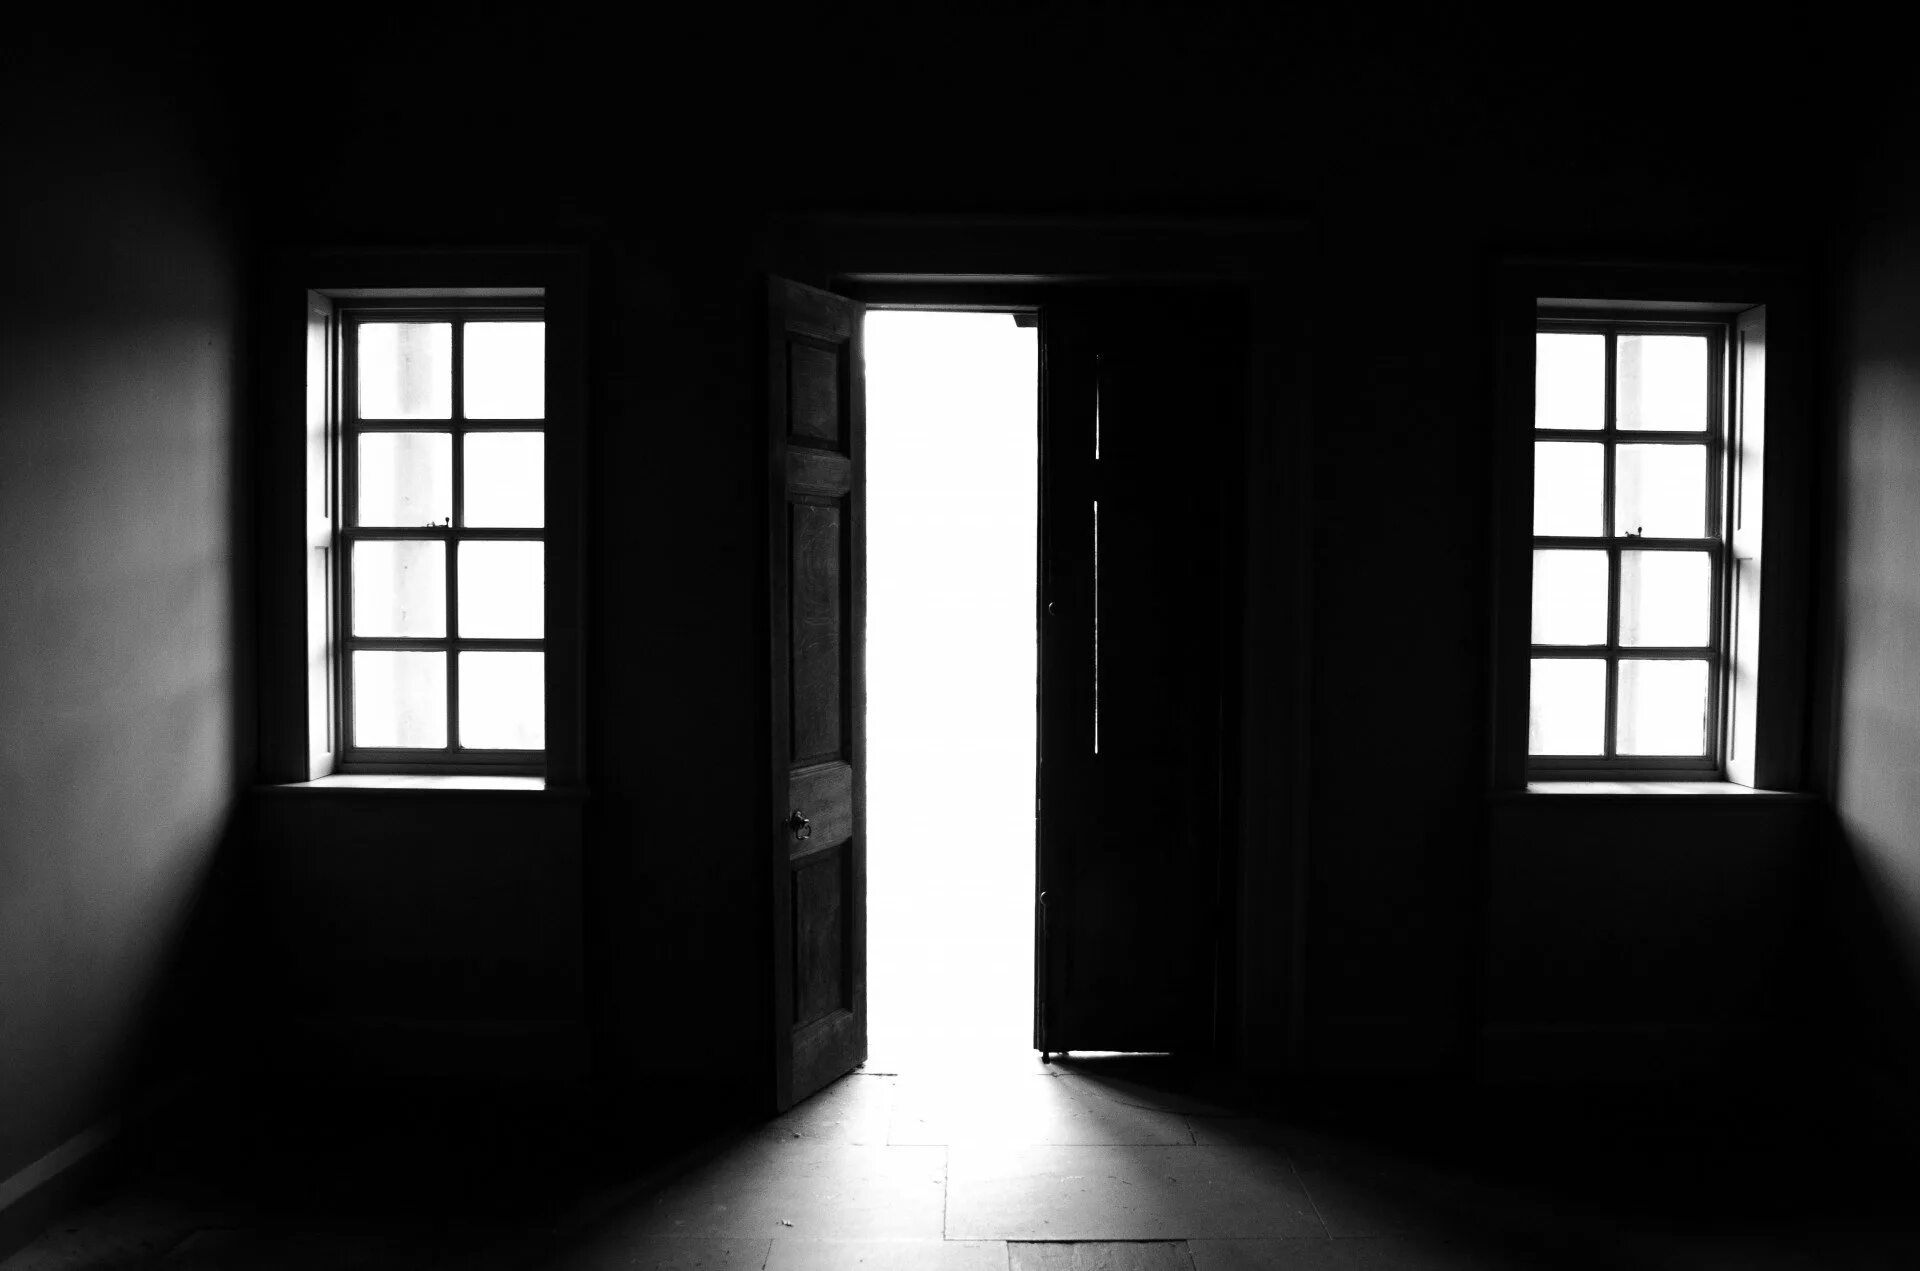 Снятся черные окна. Темная комната с окном. Темная комната. Открытая дверь. Дверь в темную комнату.